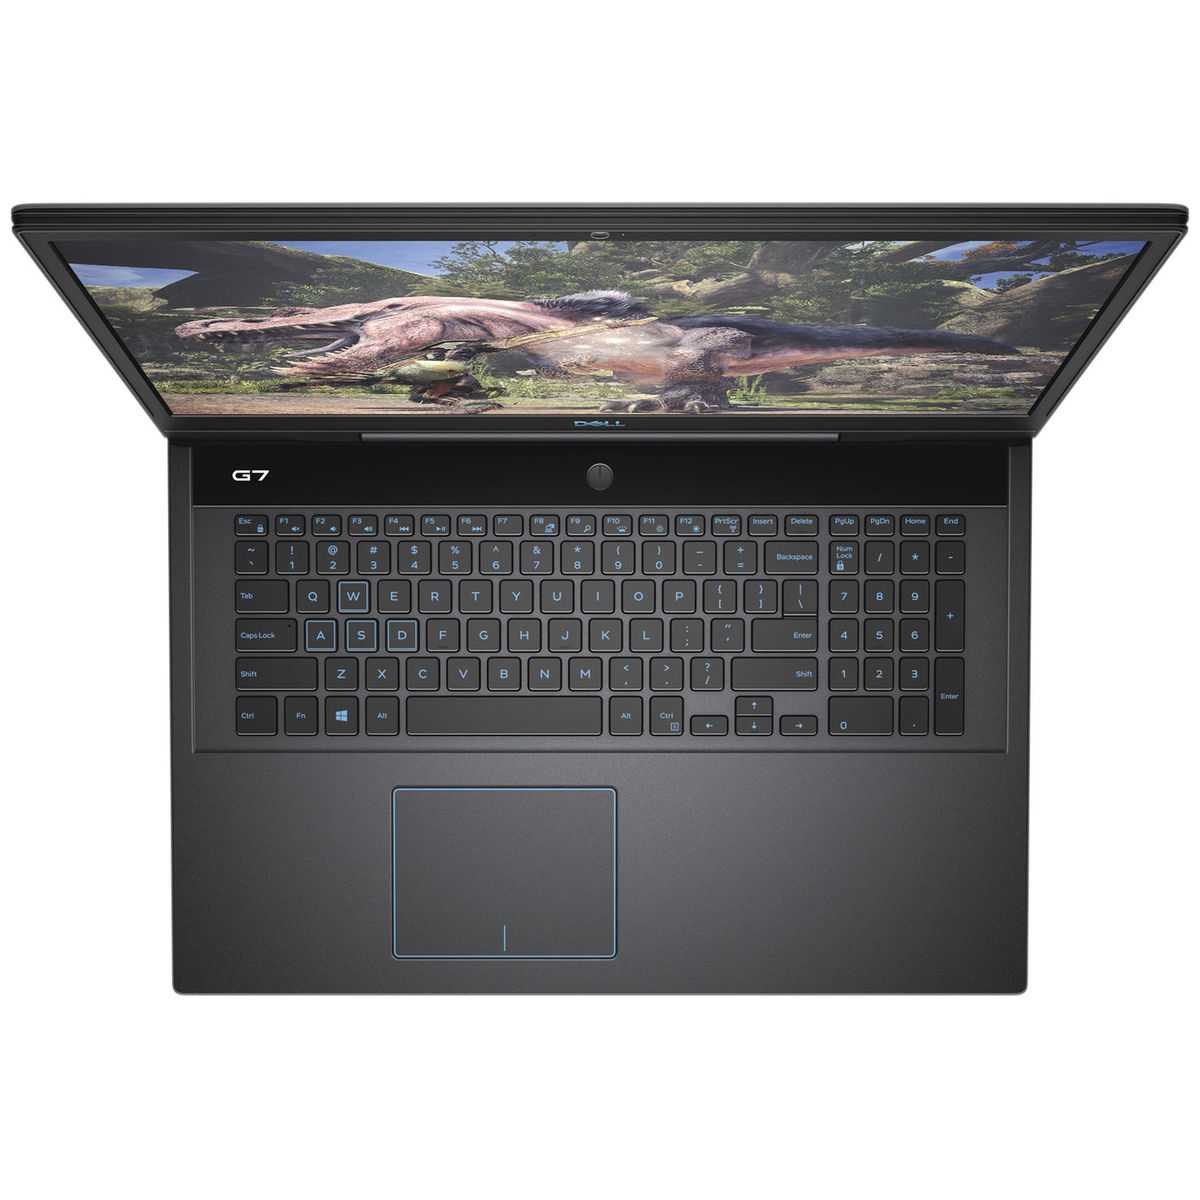 Dell g7 17 7790 - доступный игровой ноутбук на современной платформе не без недостатков